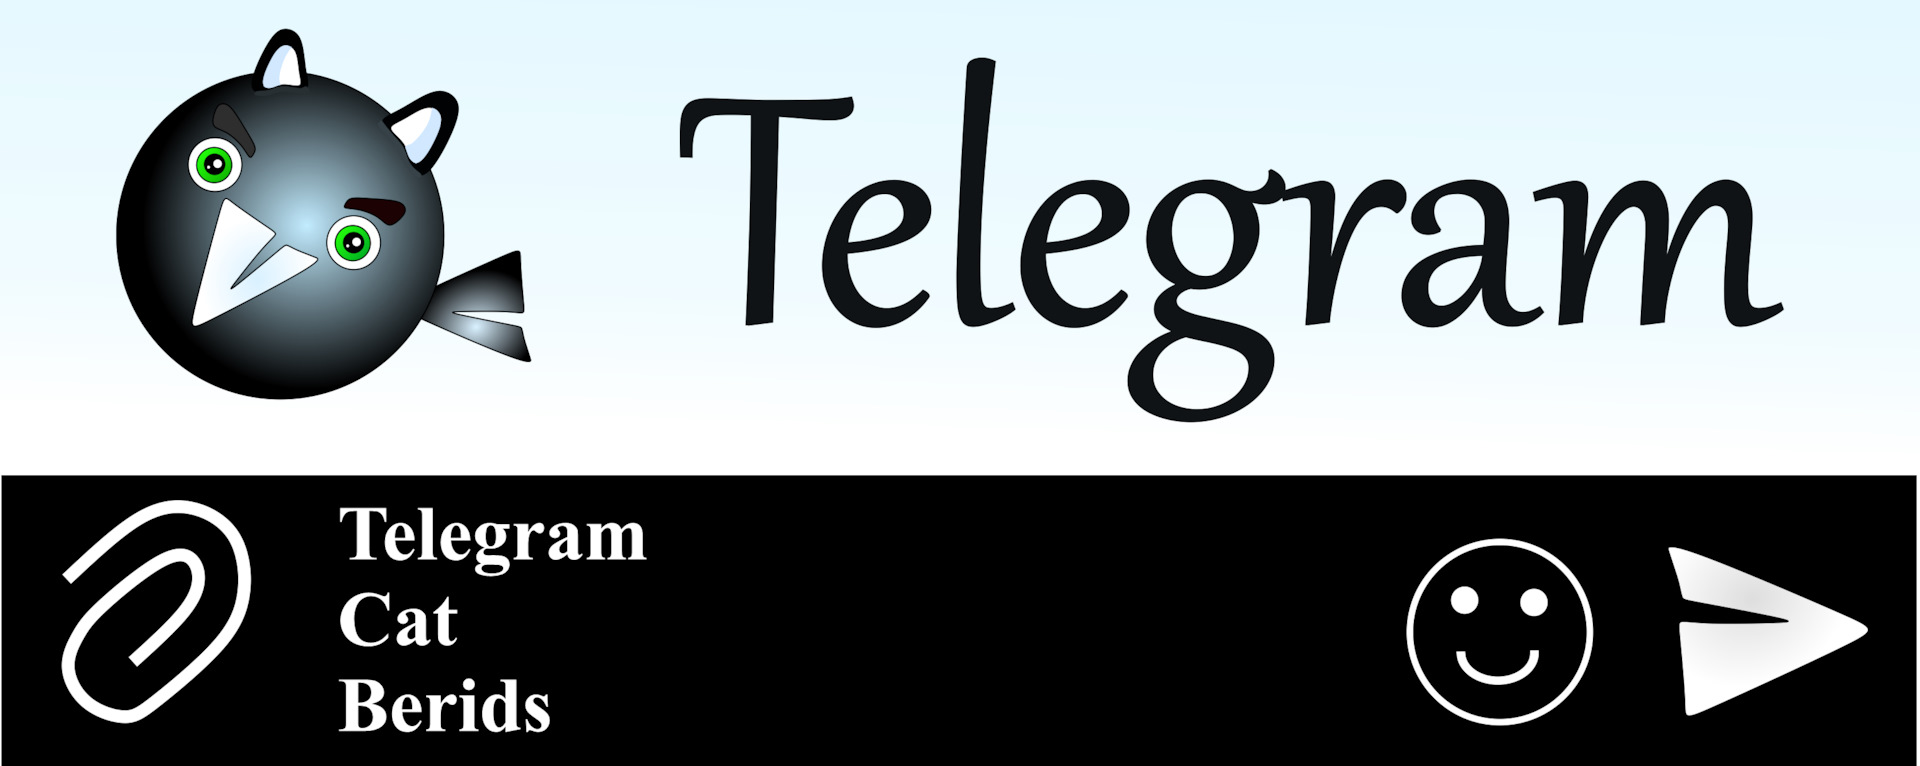 Как сделать русский телеграмм на компьютере фото 85